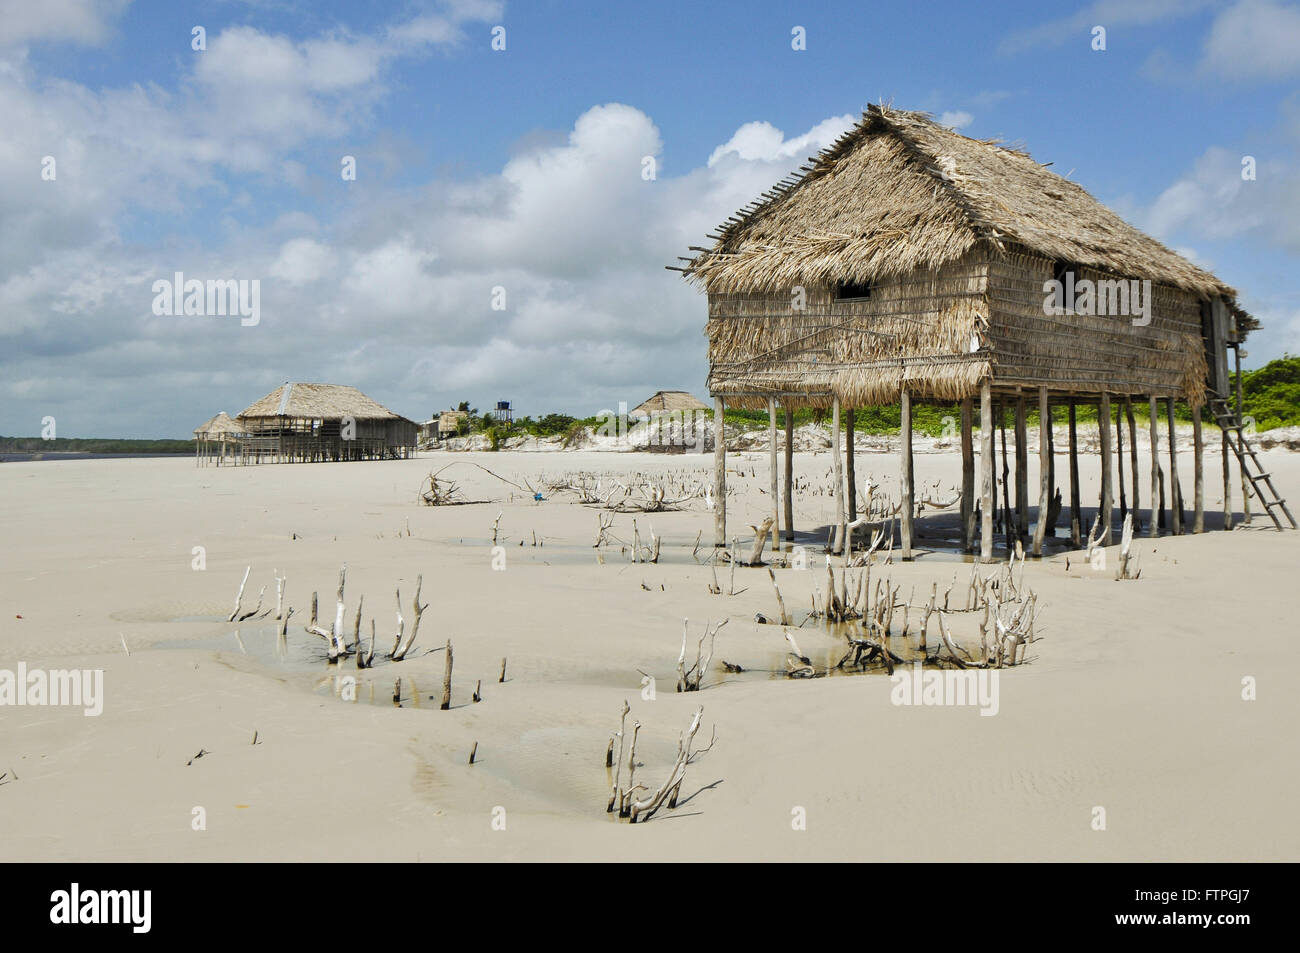 Sape palafitte sulla spiaggia dell'isola di Pilao Foto Stock